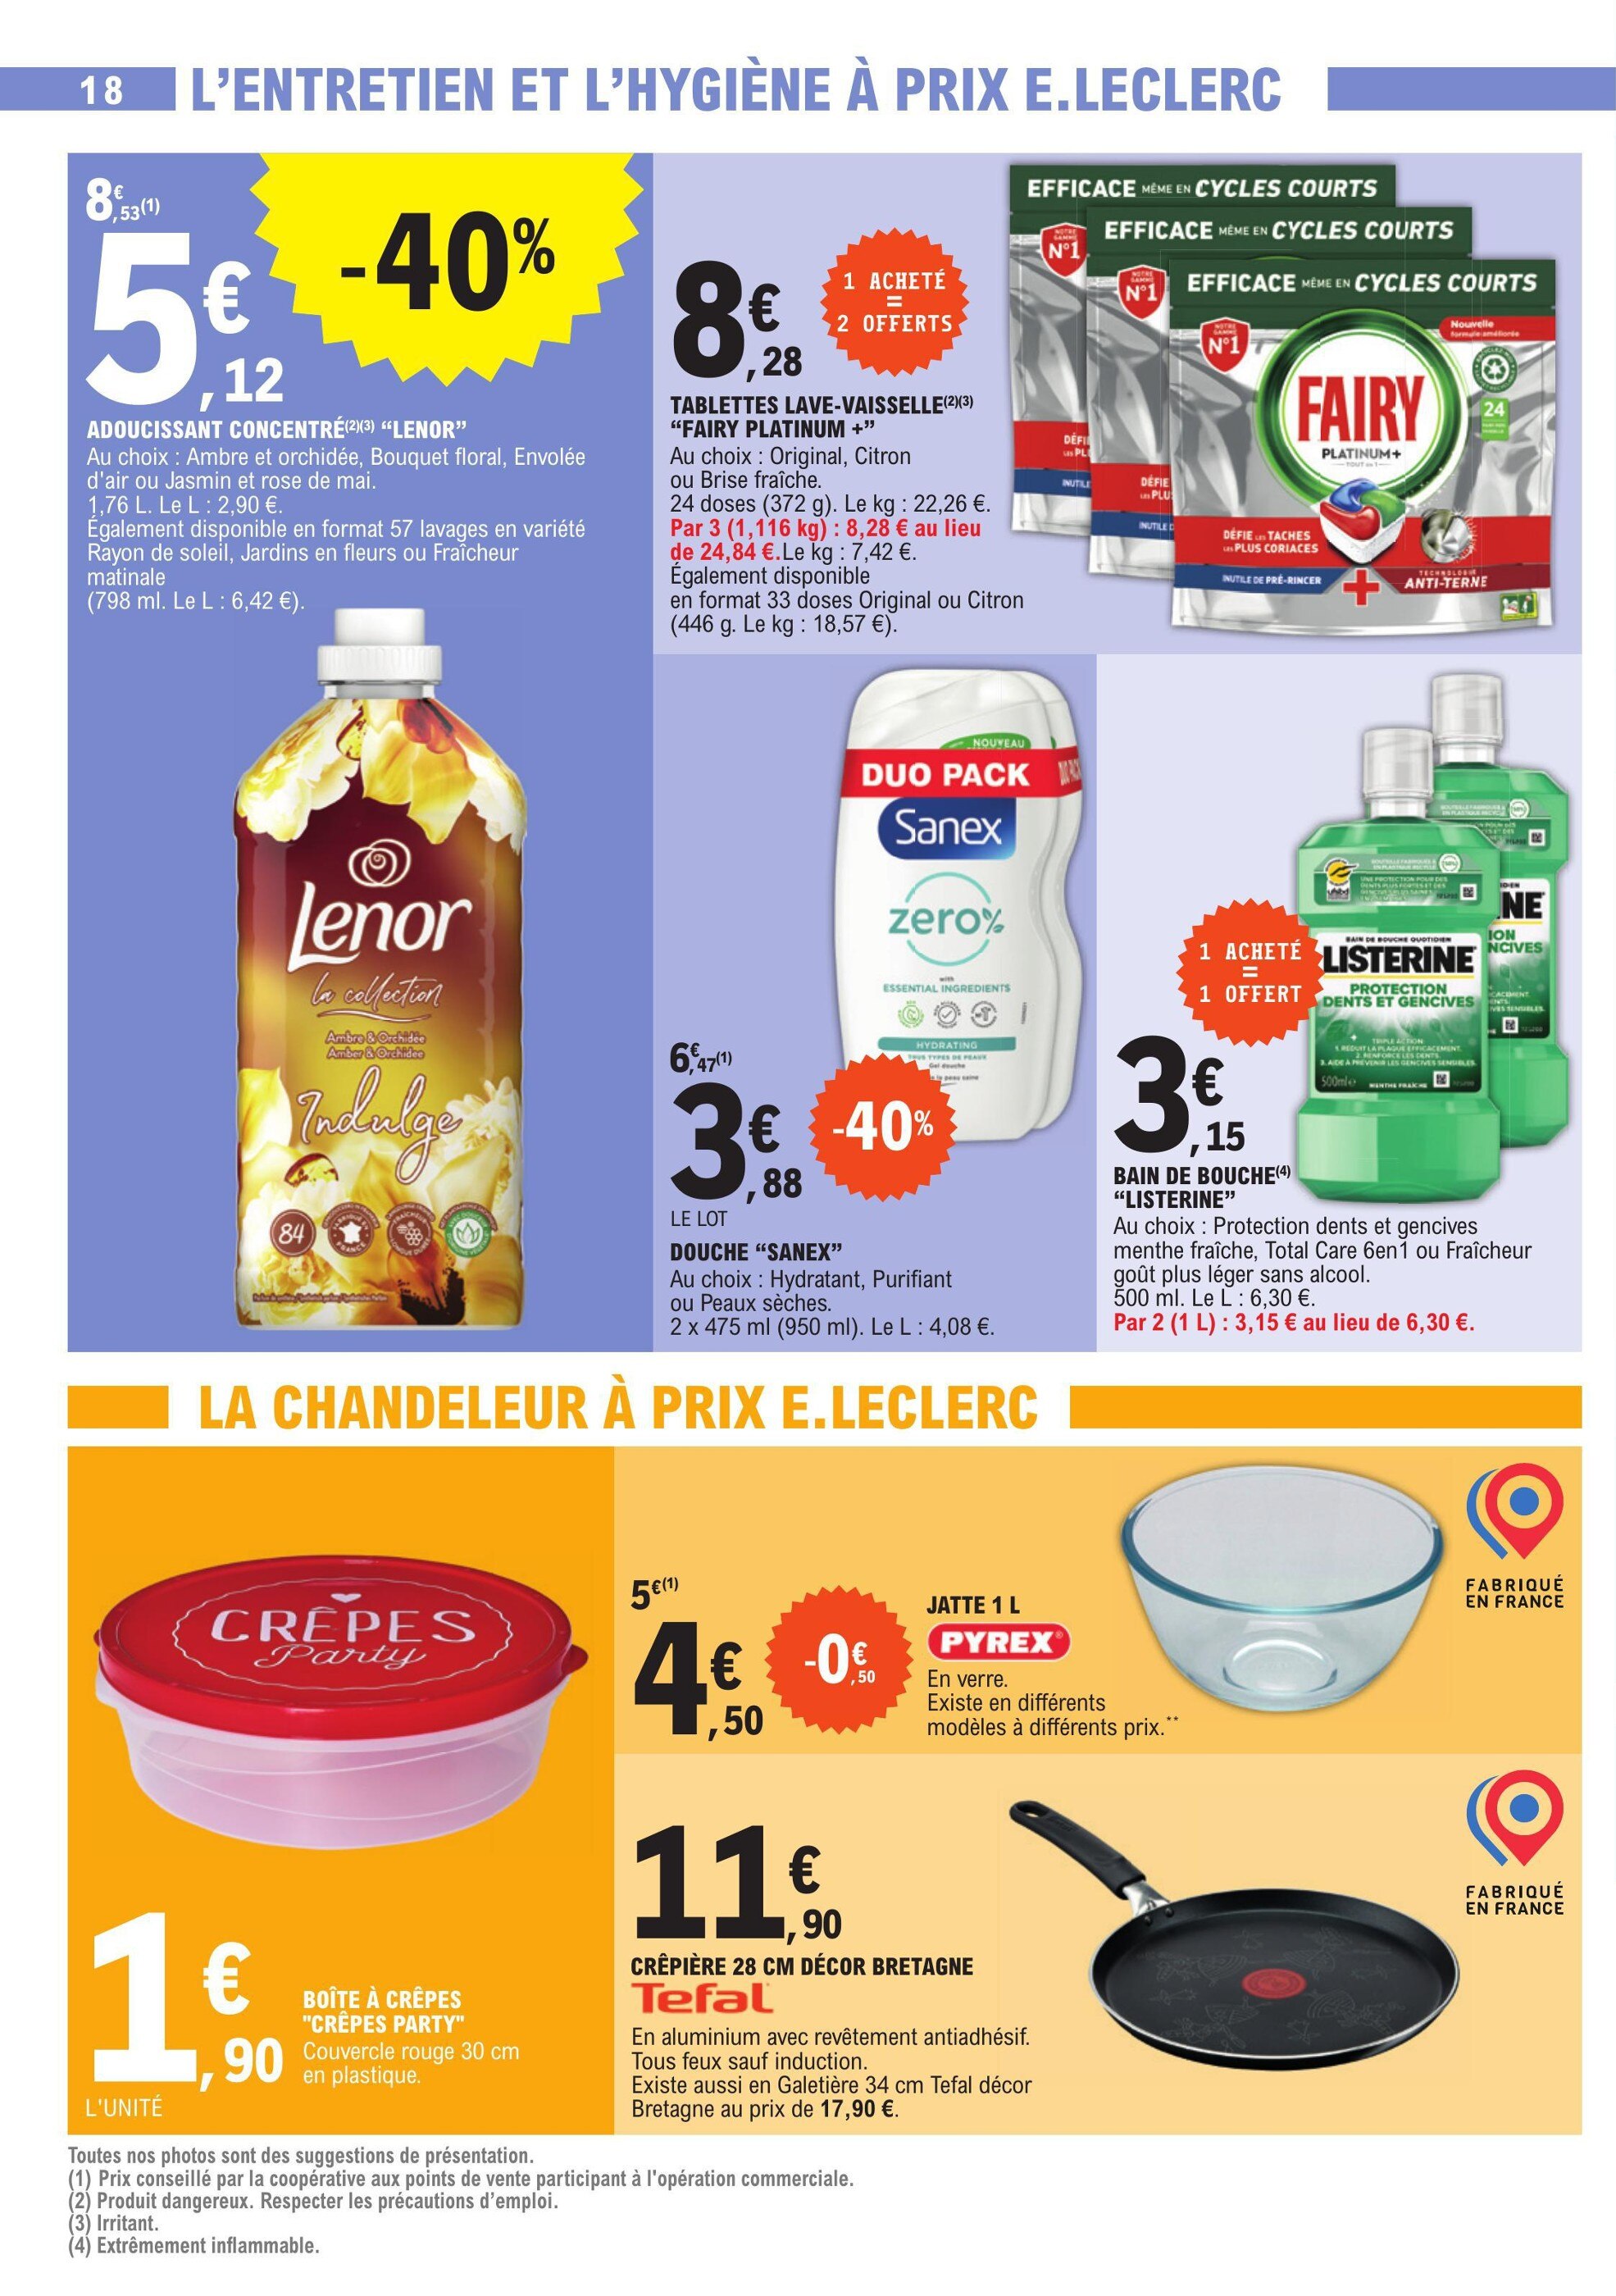 Promo Paic liquide vaisselle vinaigre et citron chez Auchan Supermarché